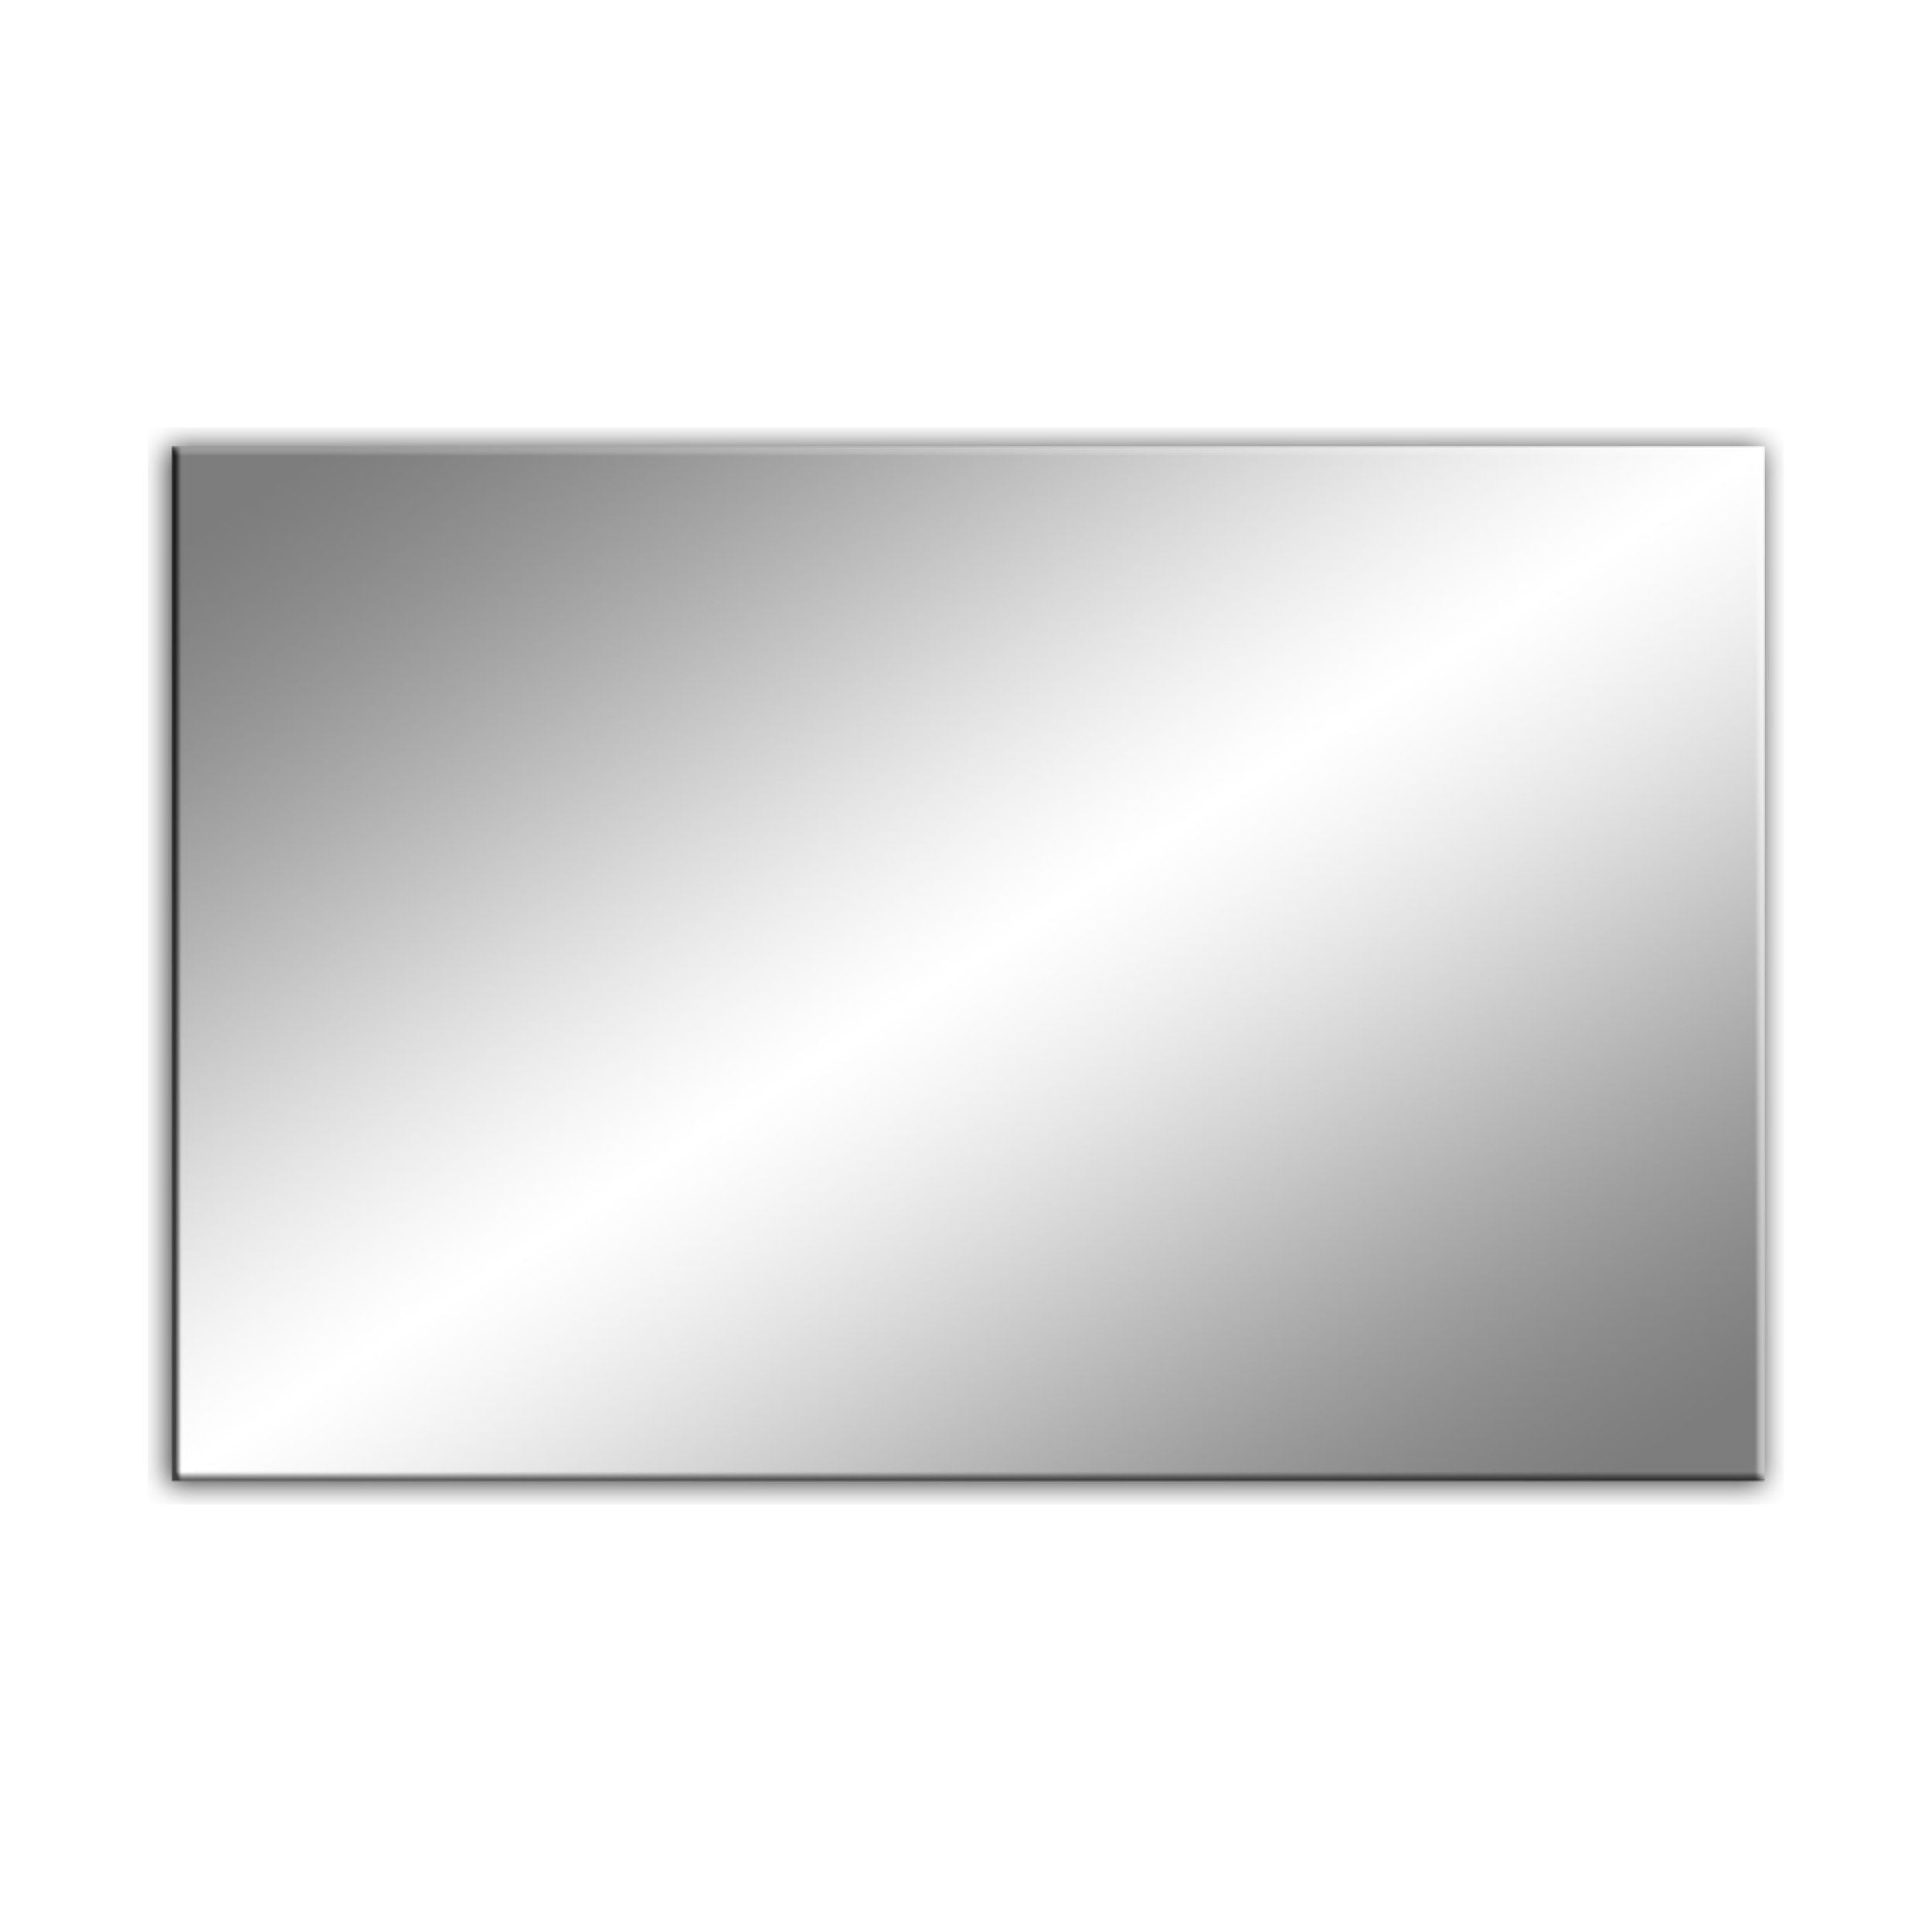 Speil med Slipte Kanter og Polering 80x60 cm, 10 Formater